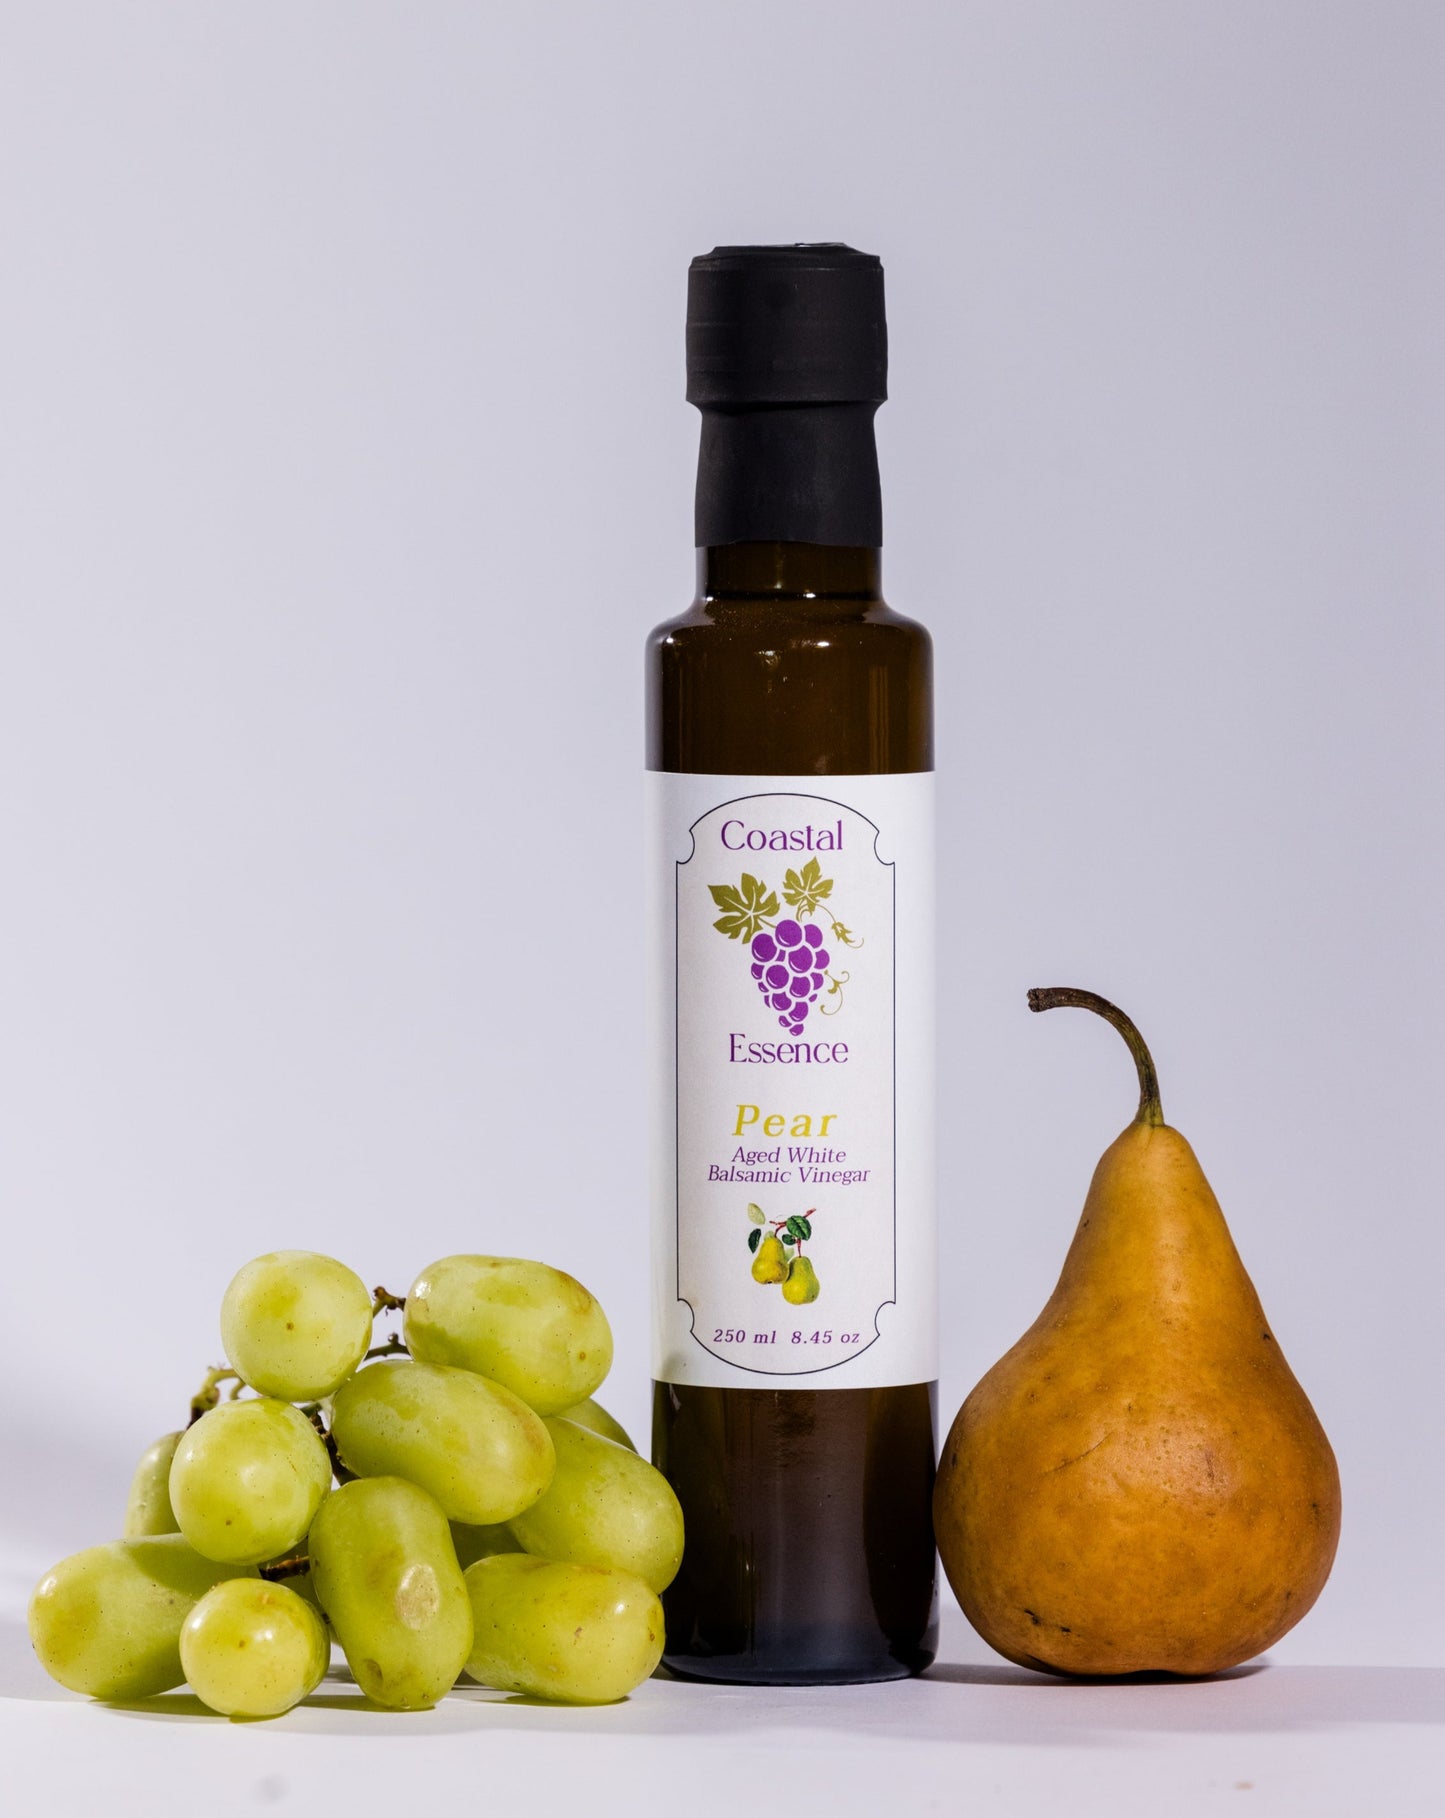 Pear Aged  White Balsamic Vinegar